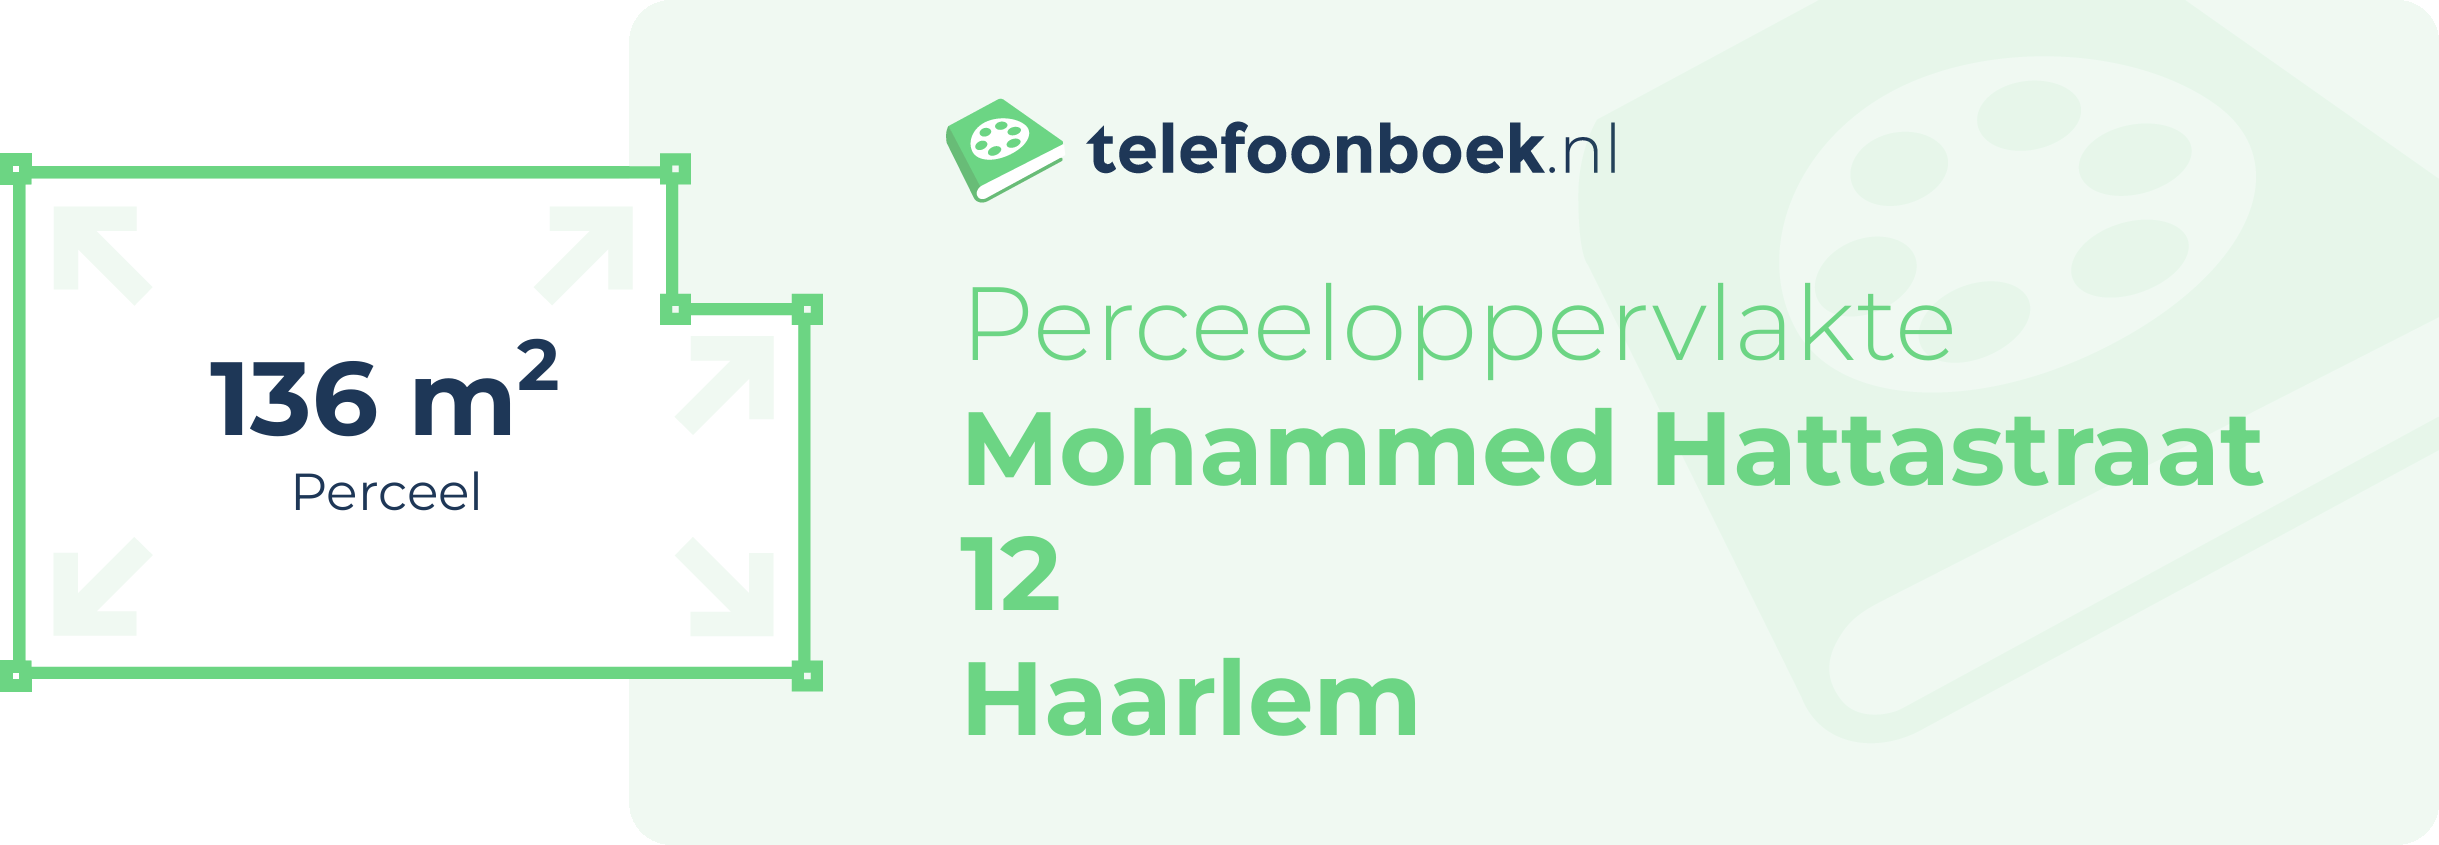 Perceeloppervlakte Mohammed Hattastraat 12 Haarlem